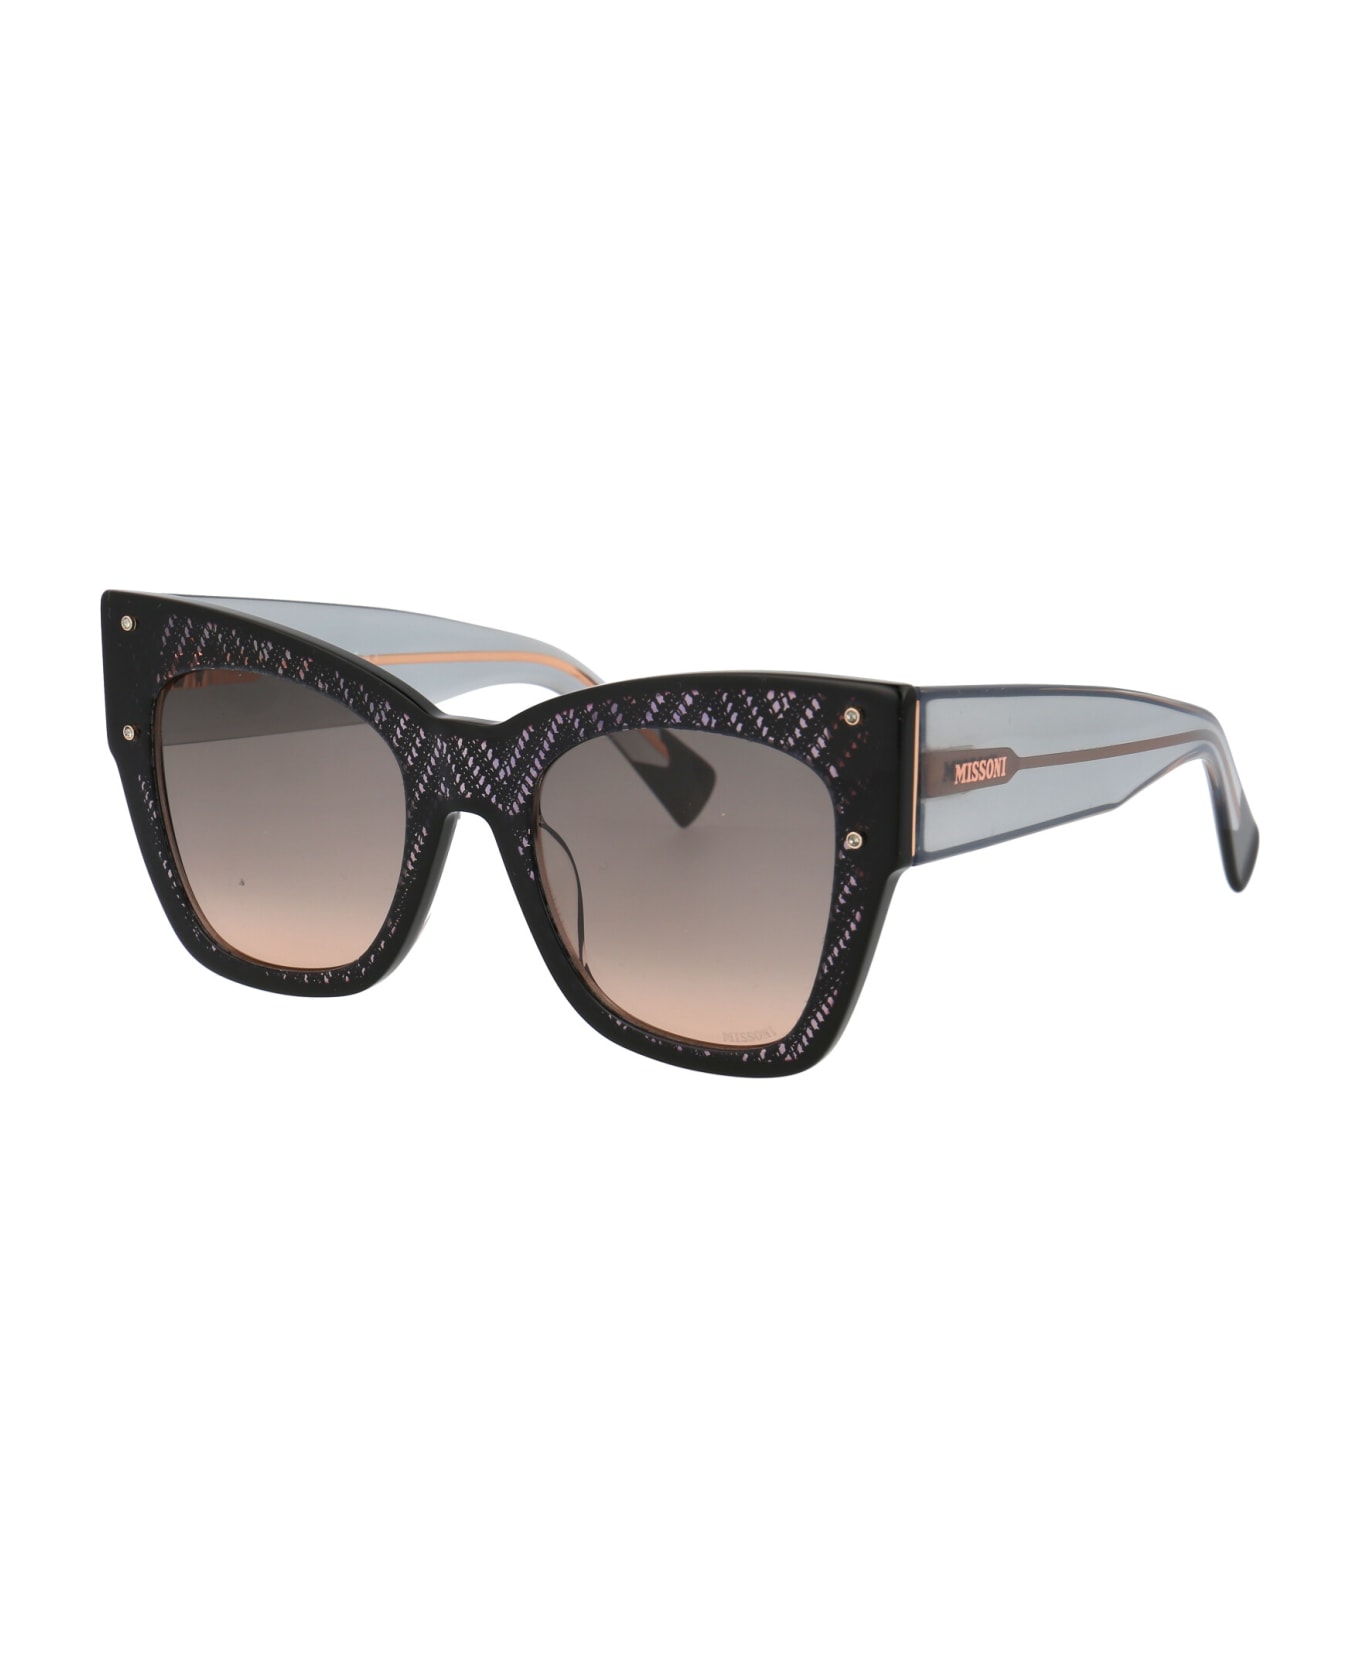 Missoni Mis 0040/s Sunglasses - KDXFF BLACK NUDE サングラス